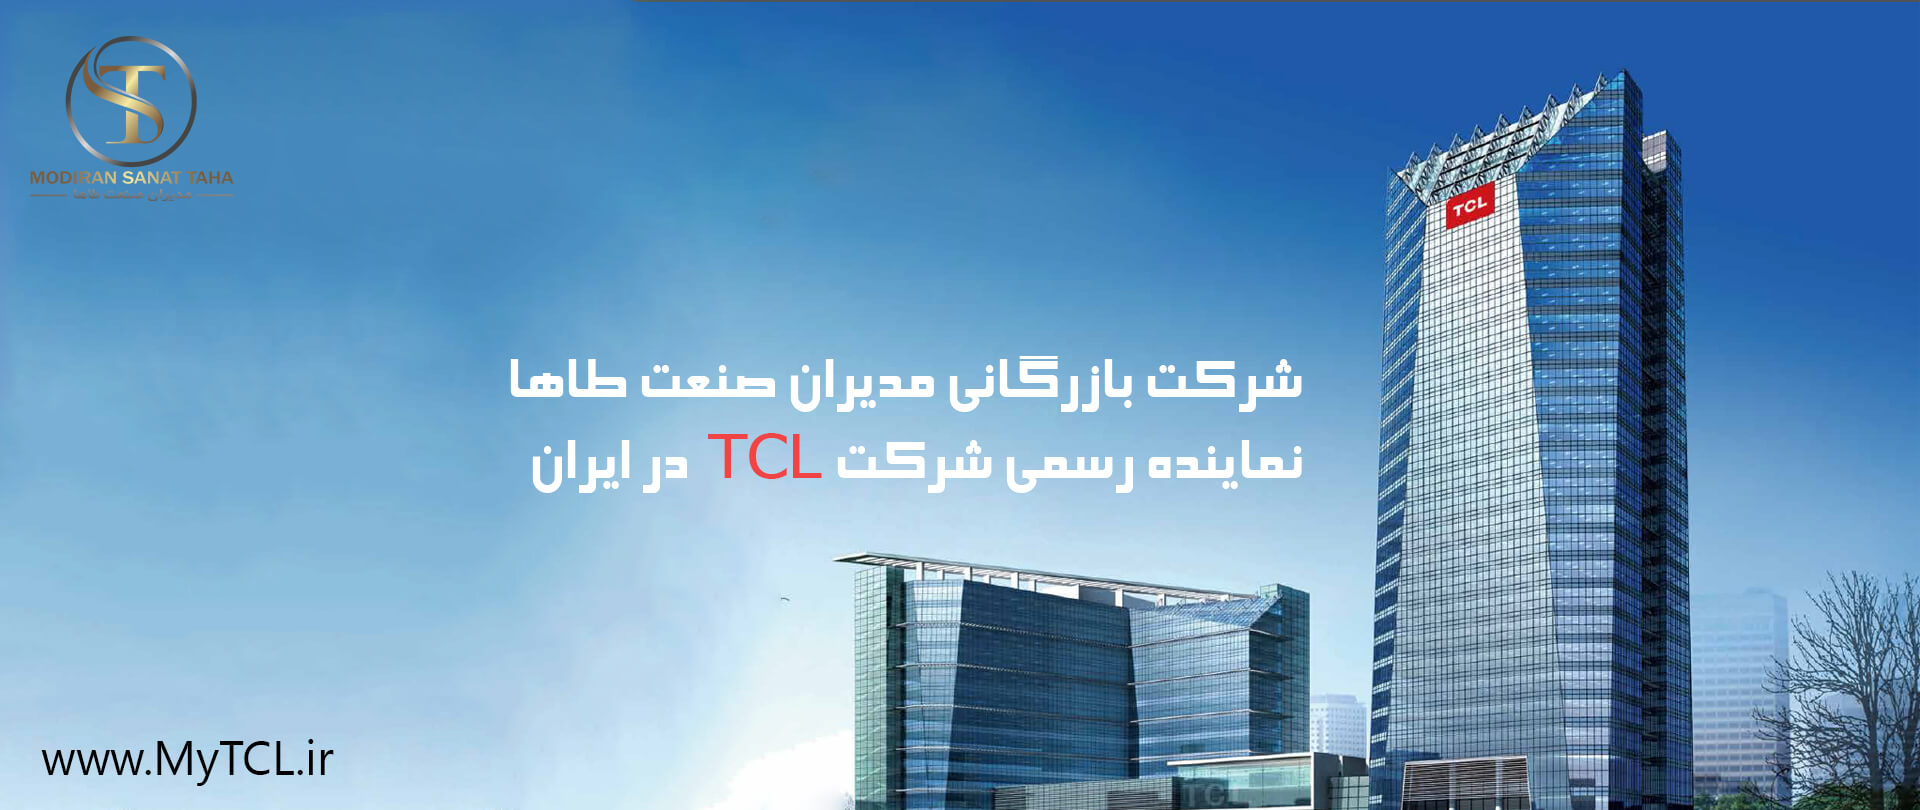 شرکت tcl